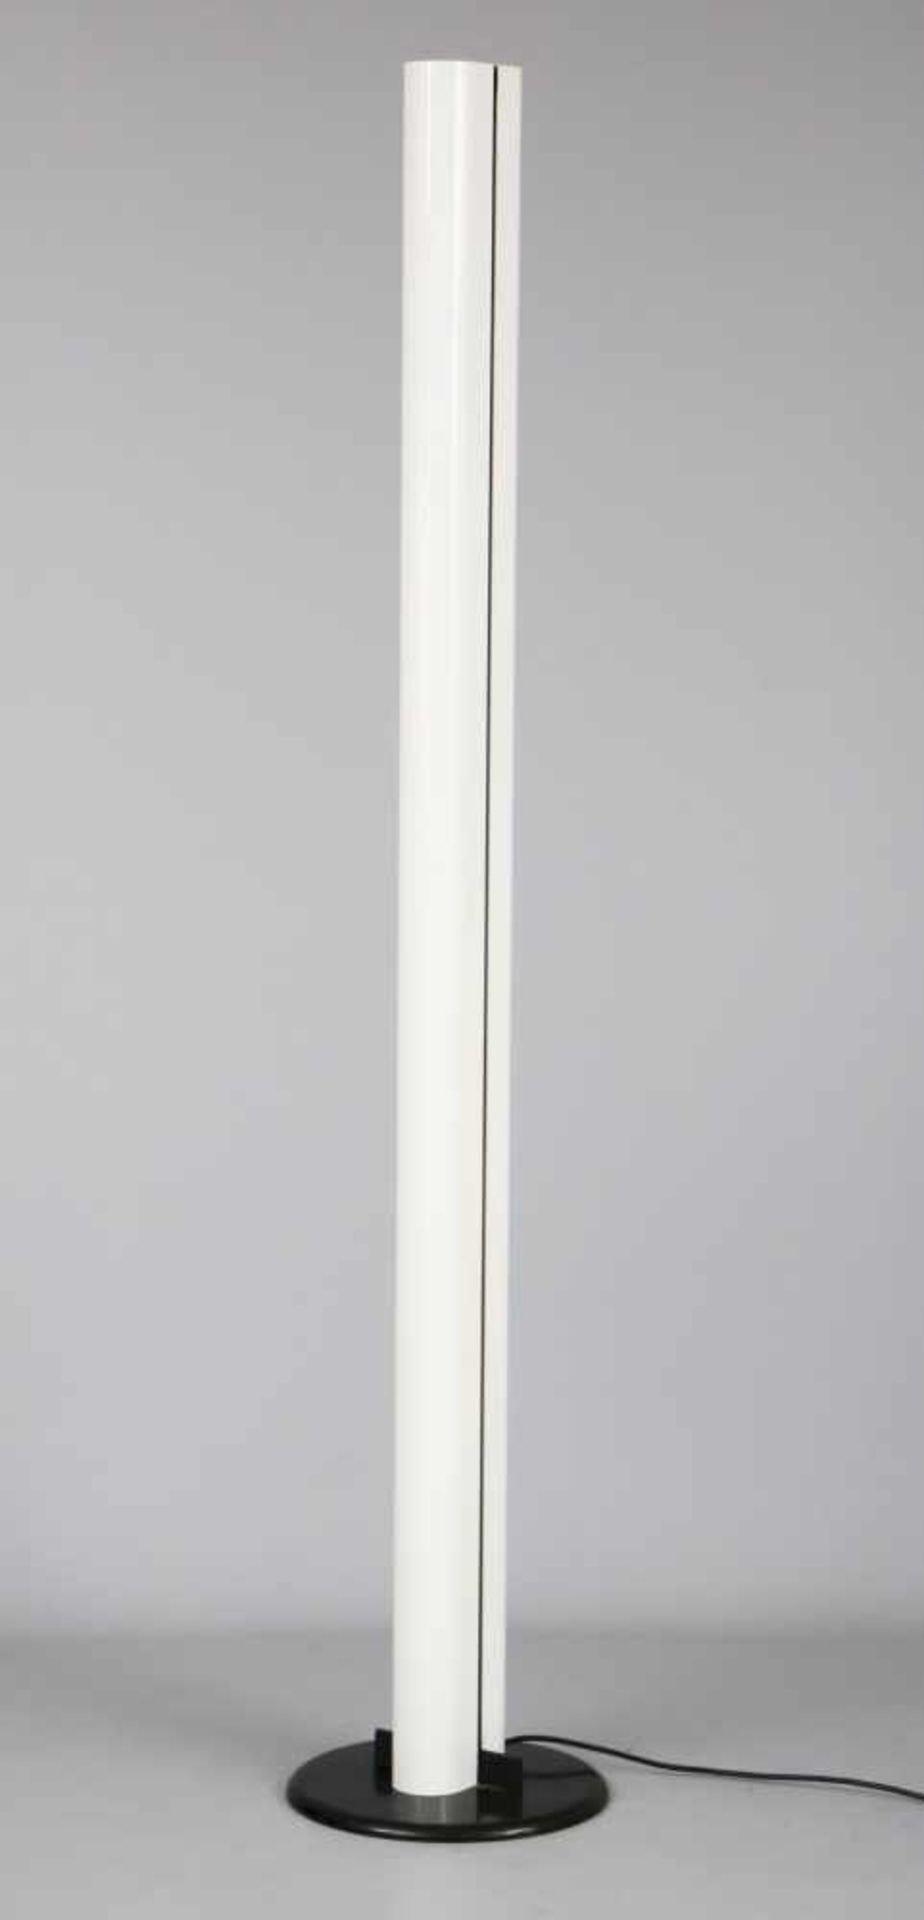 Stehlampe/Deckenfluter, ARTEMIDEmodell ¨Megaron¨, Entwurf G. FRATTINI, hoher, weiß lackierter